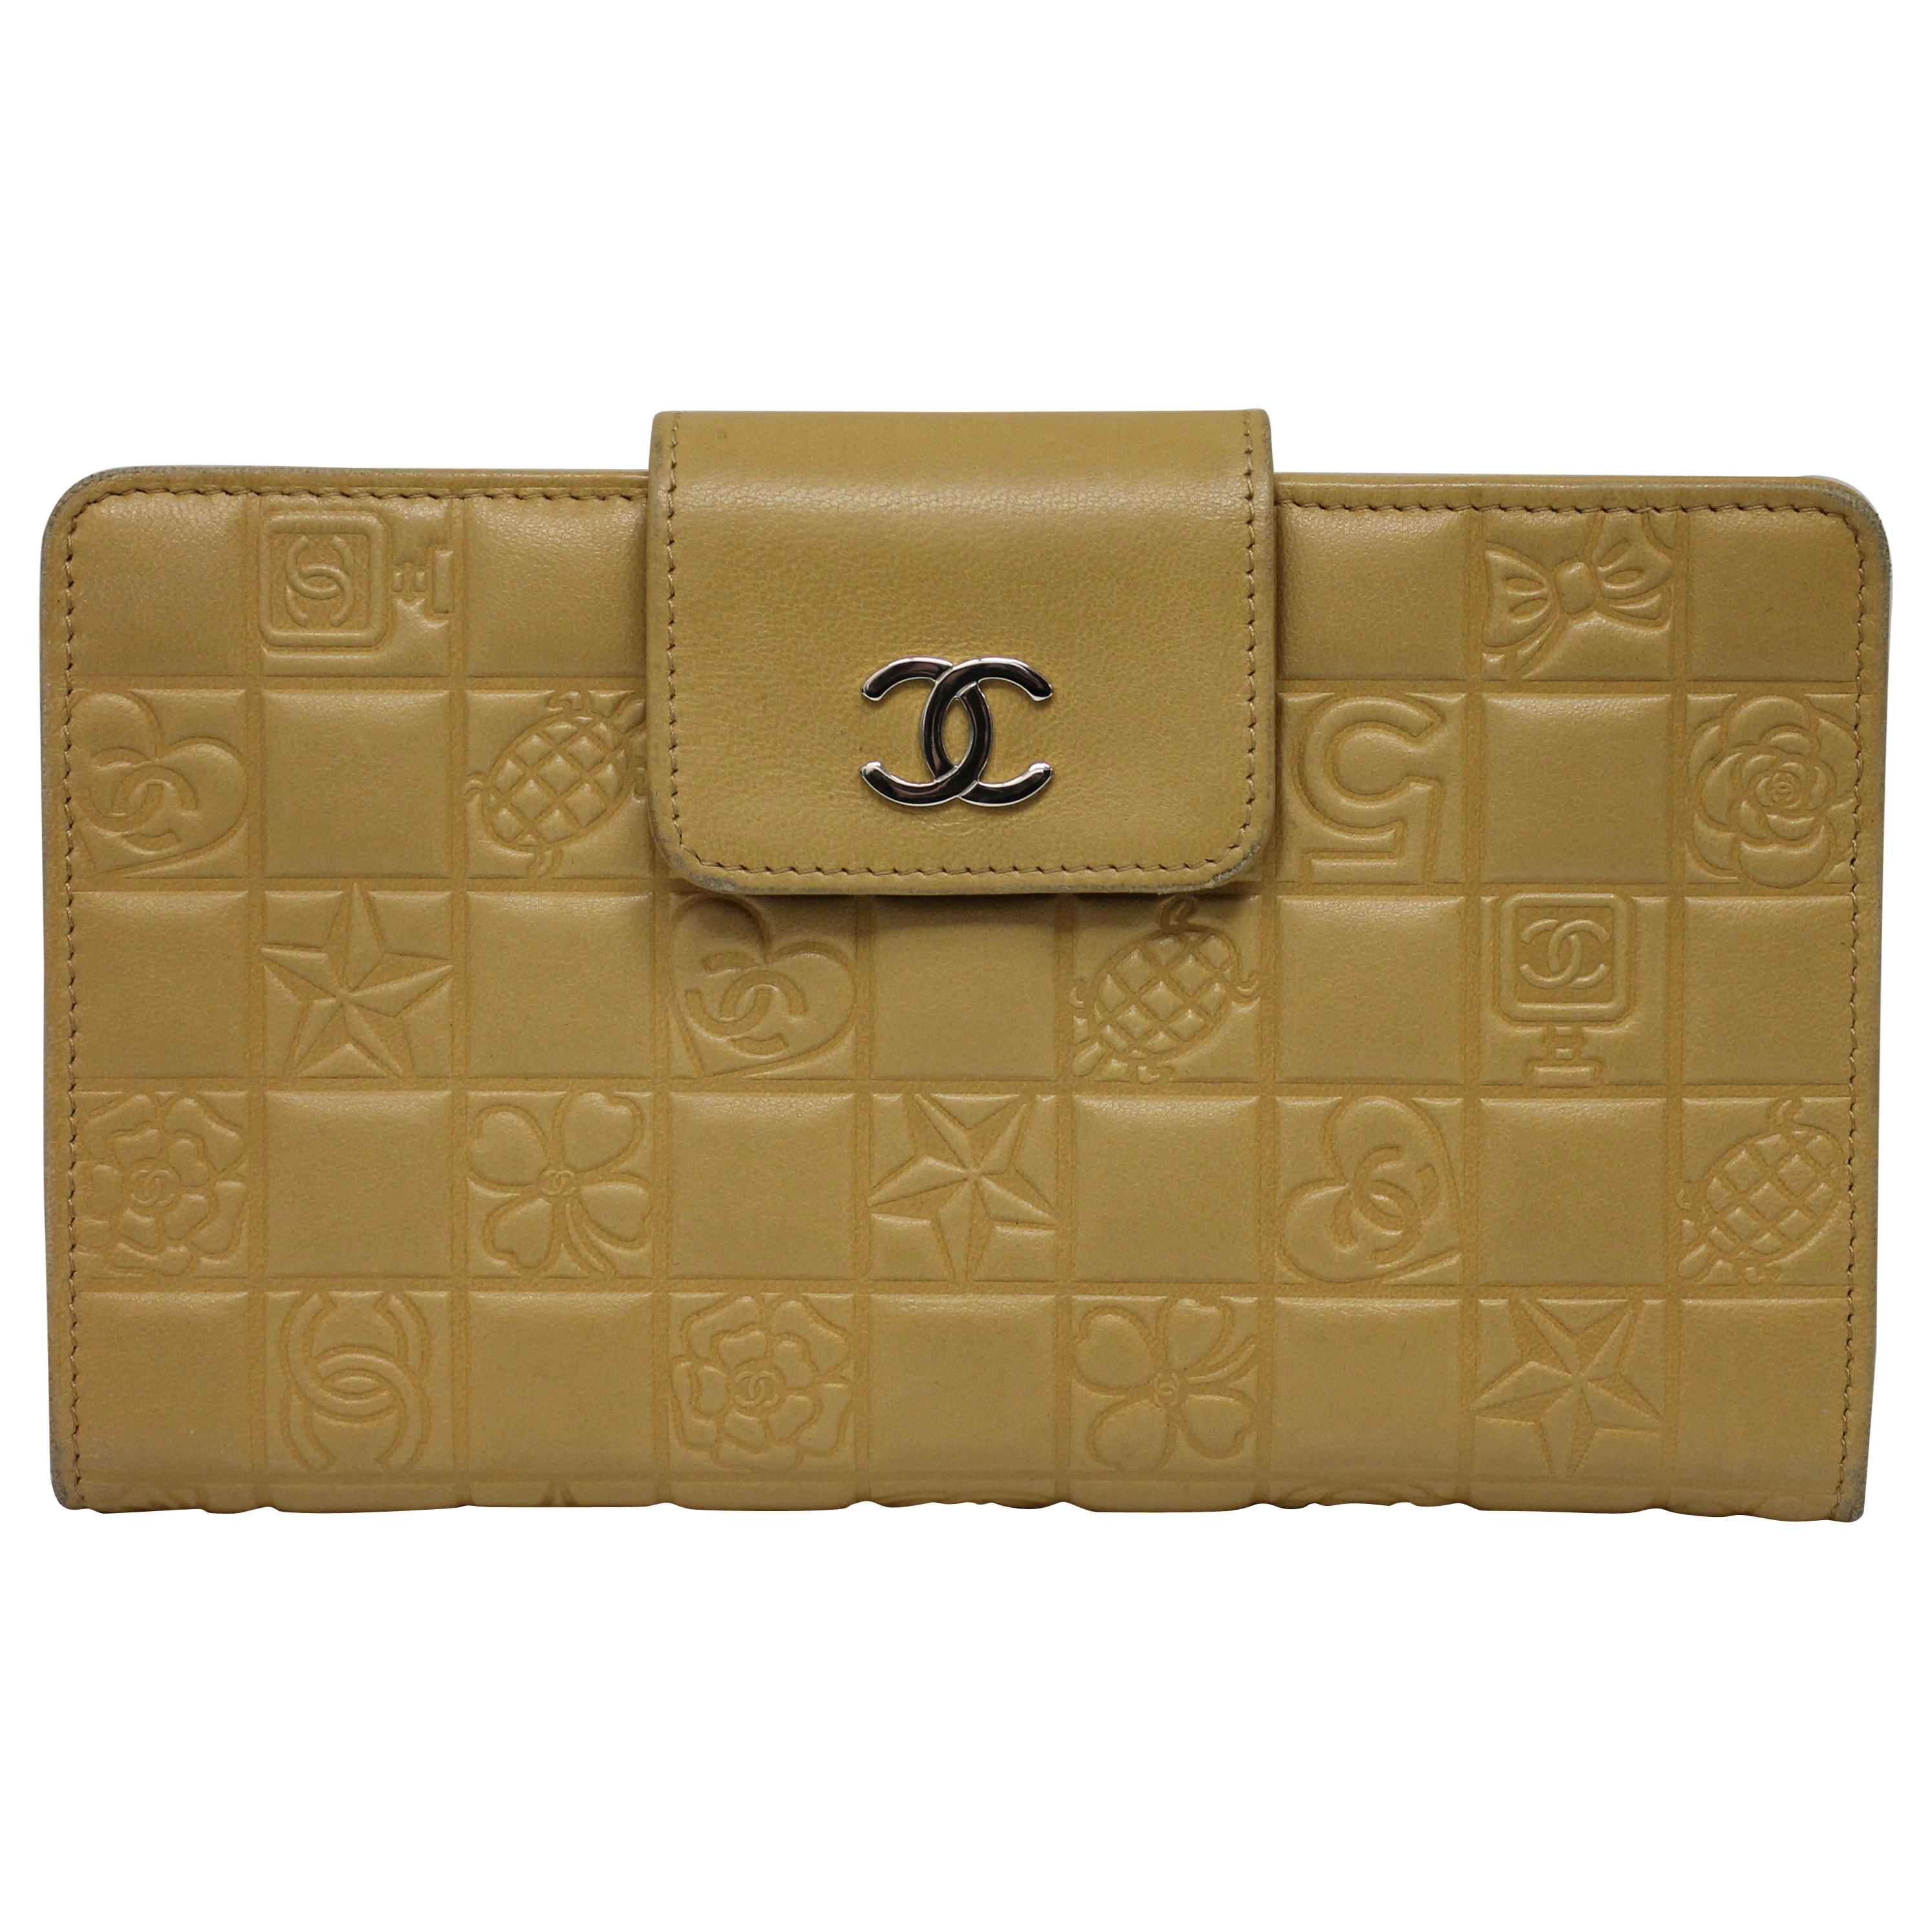 Chanel Precious Symbols Wallet For Sale